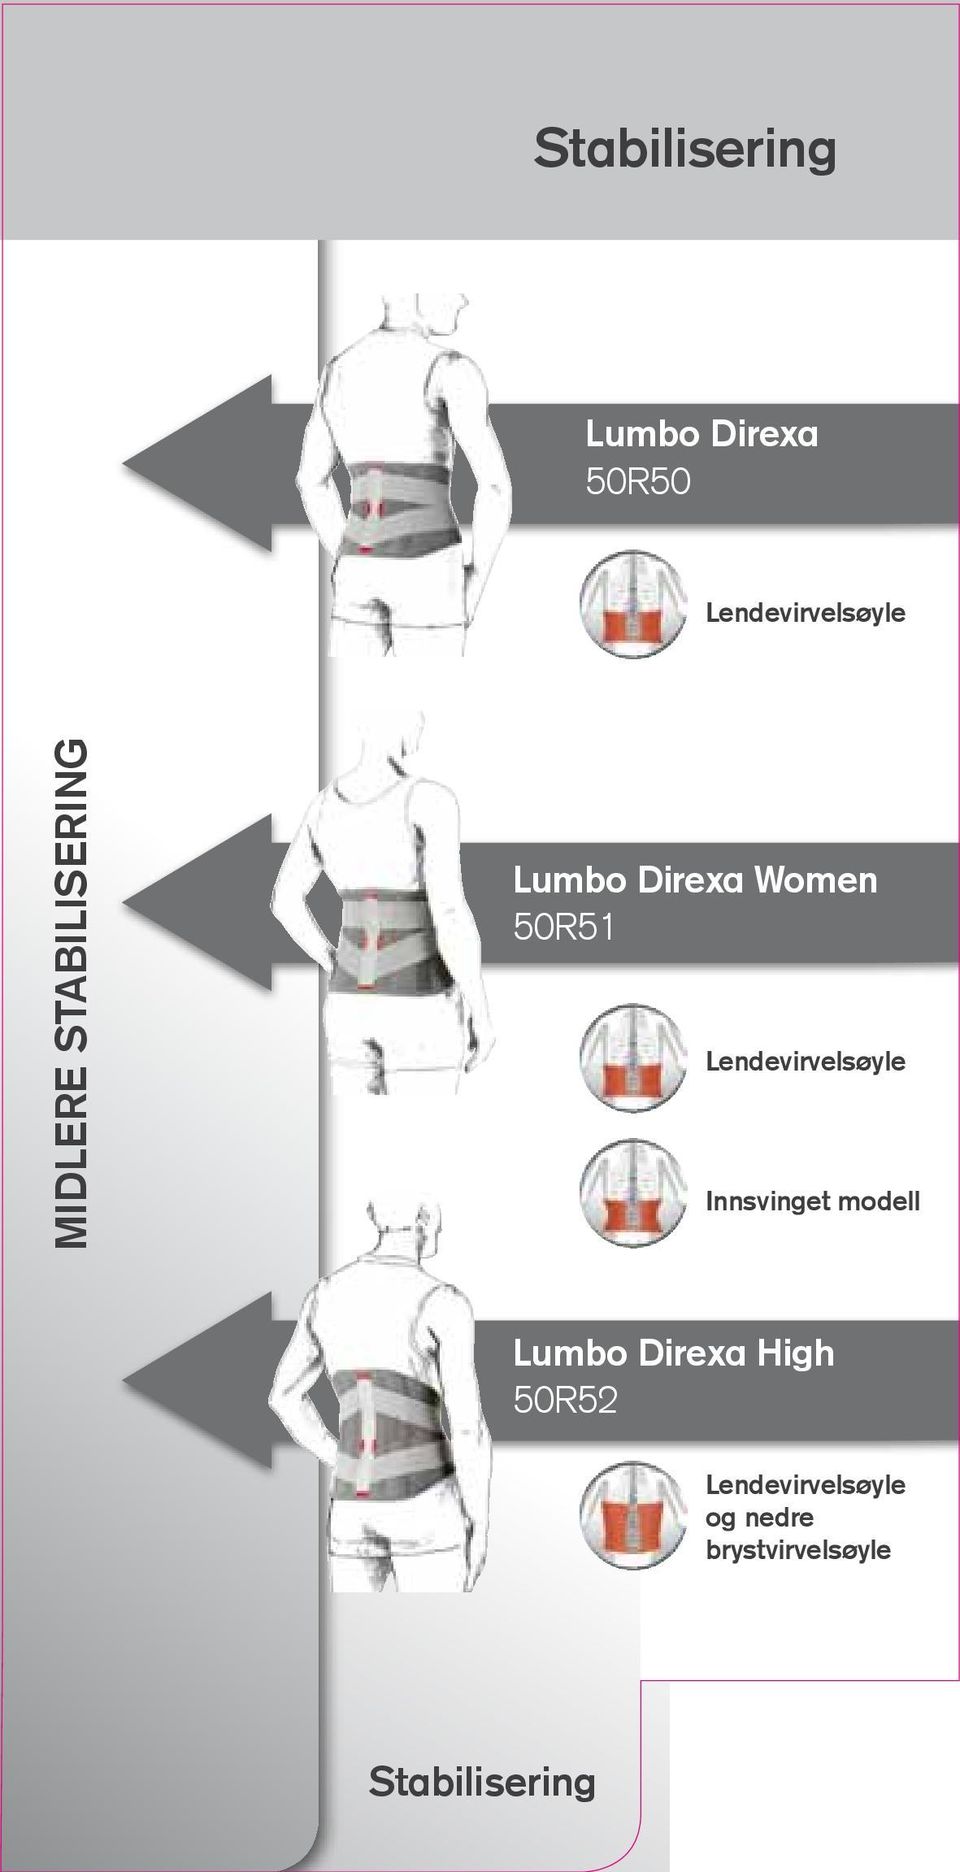 Lendevirvelsøyle Innsvinget modell Lumbo Direxa High